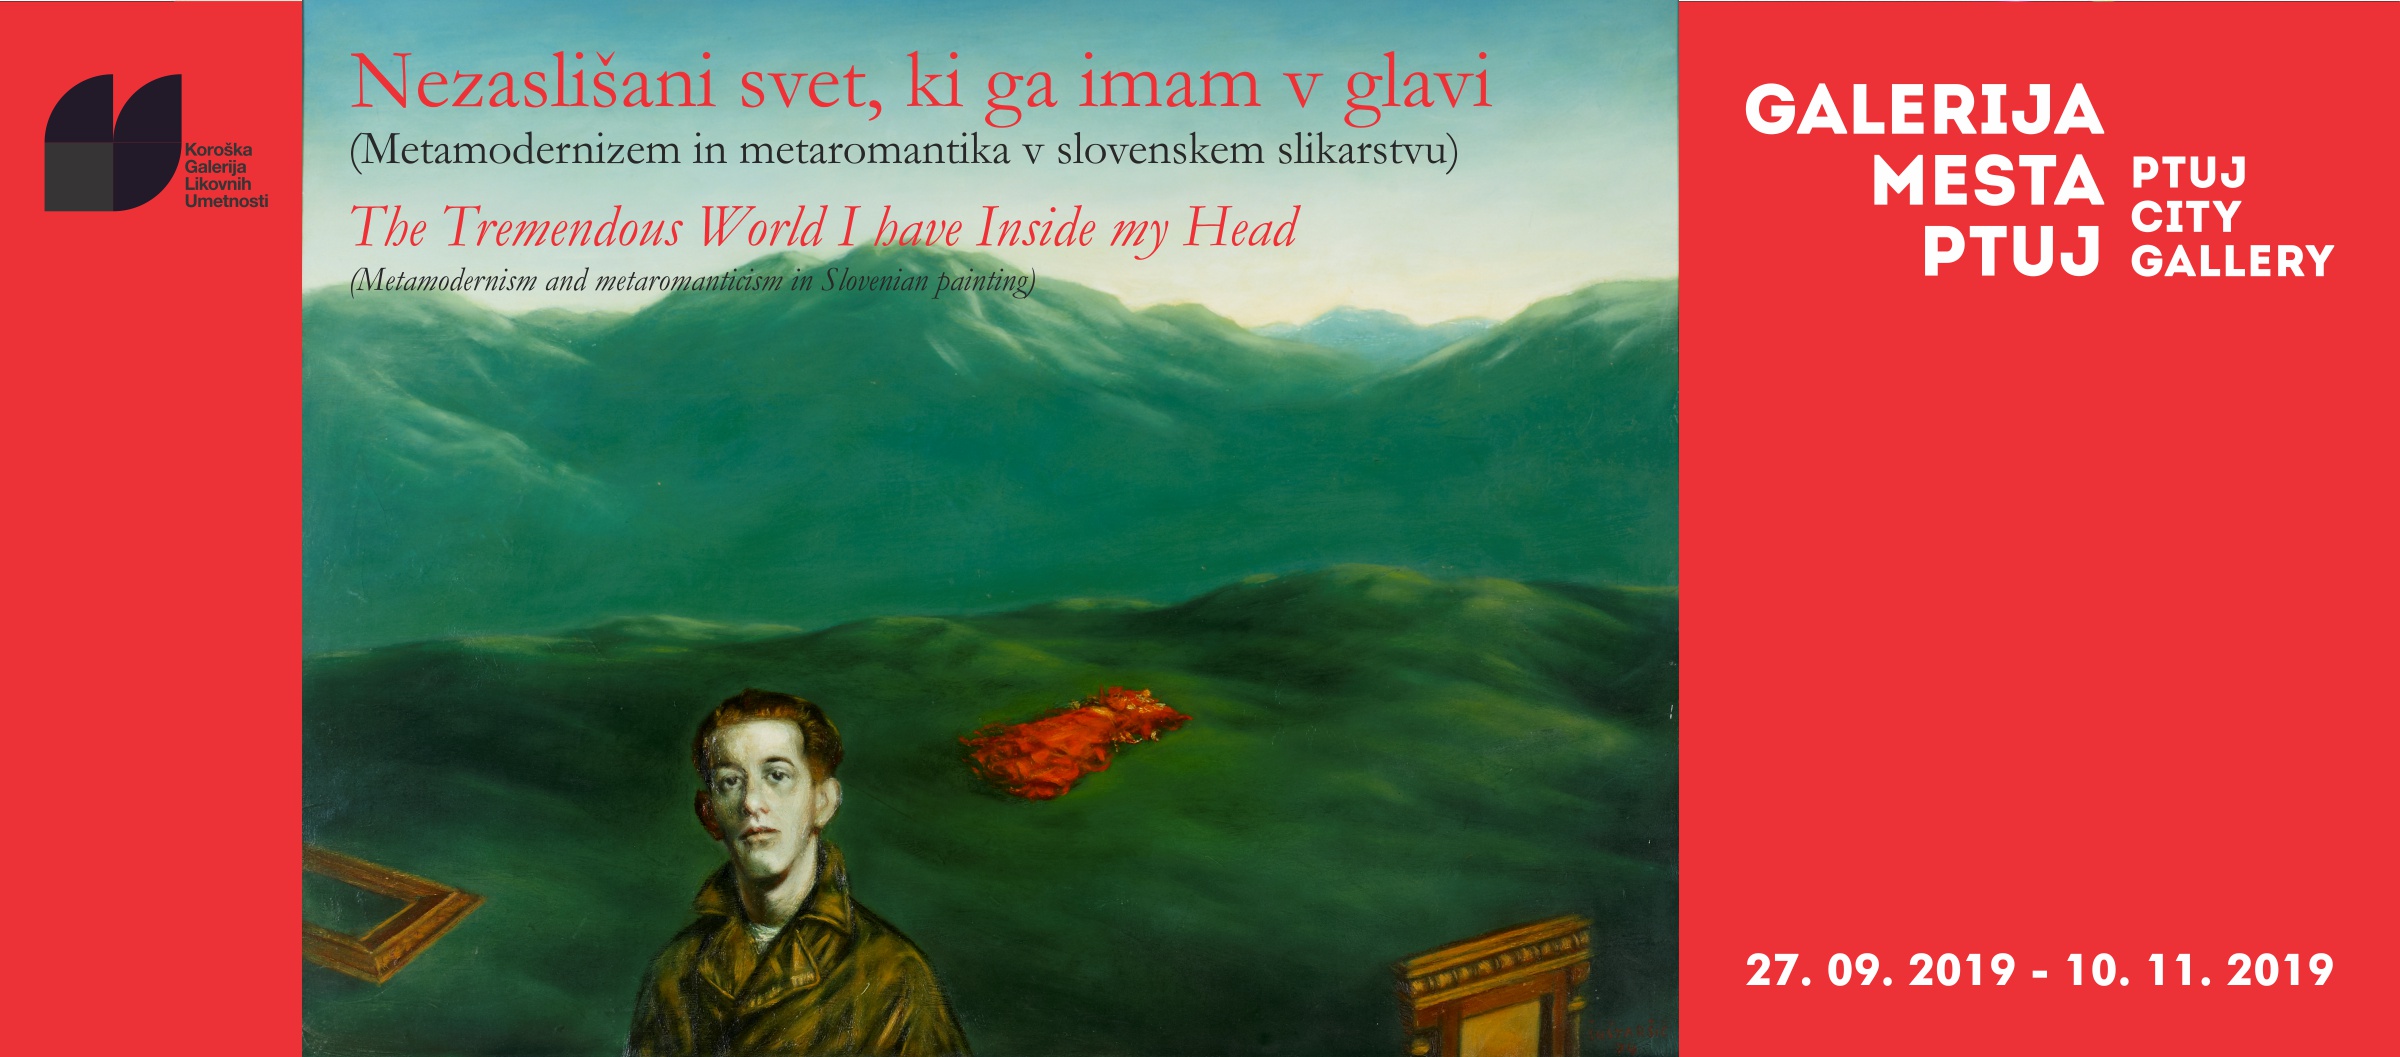 Nezaslišani svet, ki ga imam v glavi (Metamodernizem in metaromantika v slovenskem slikarstvu)